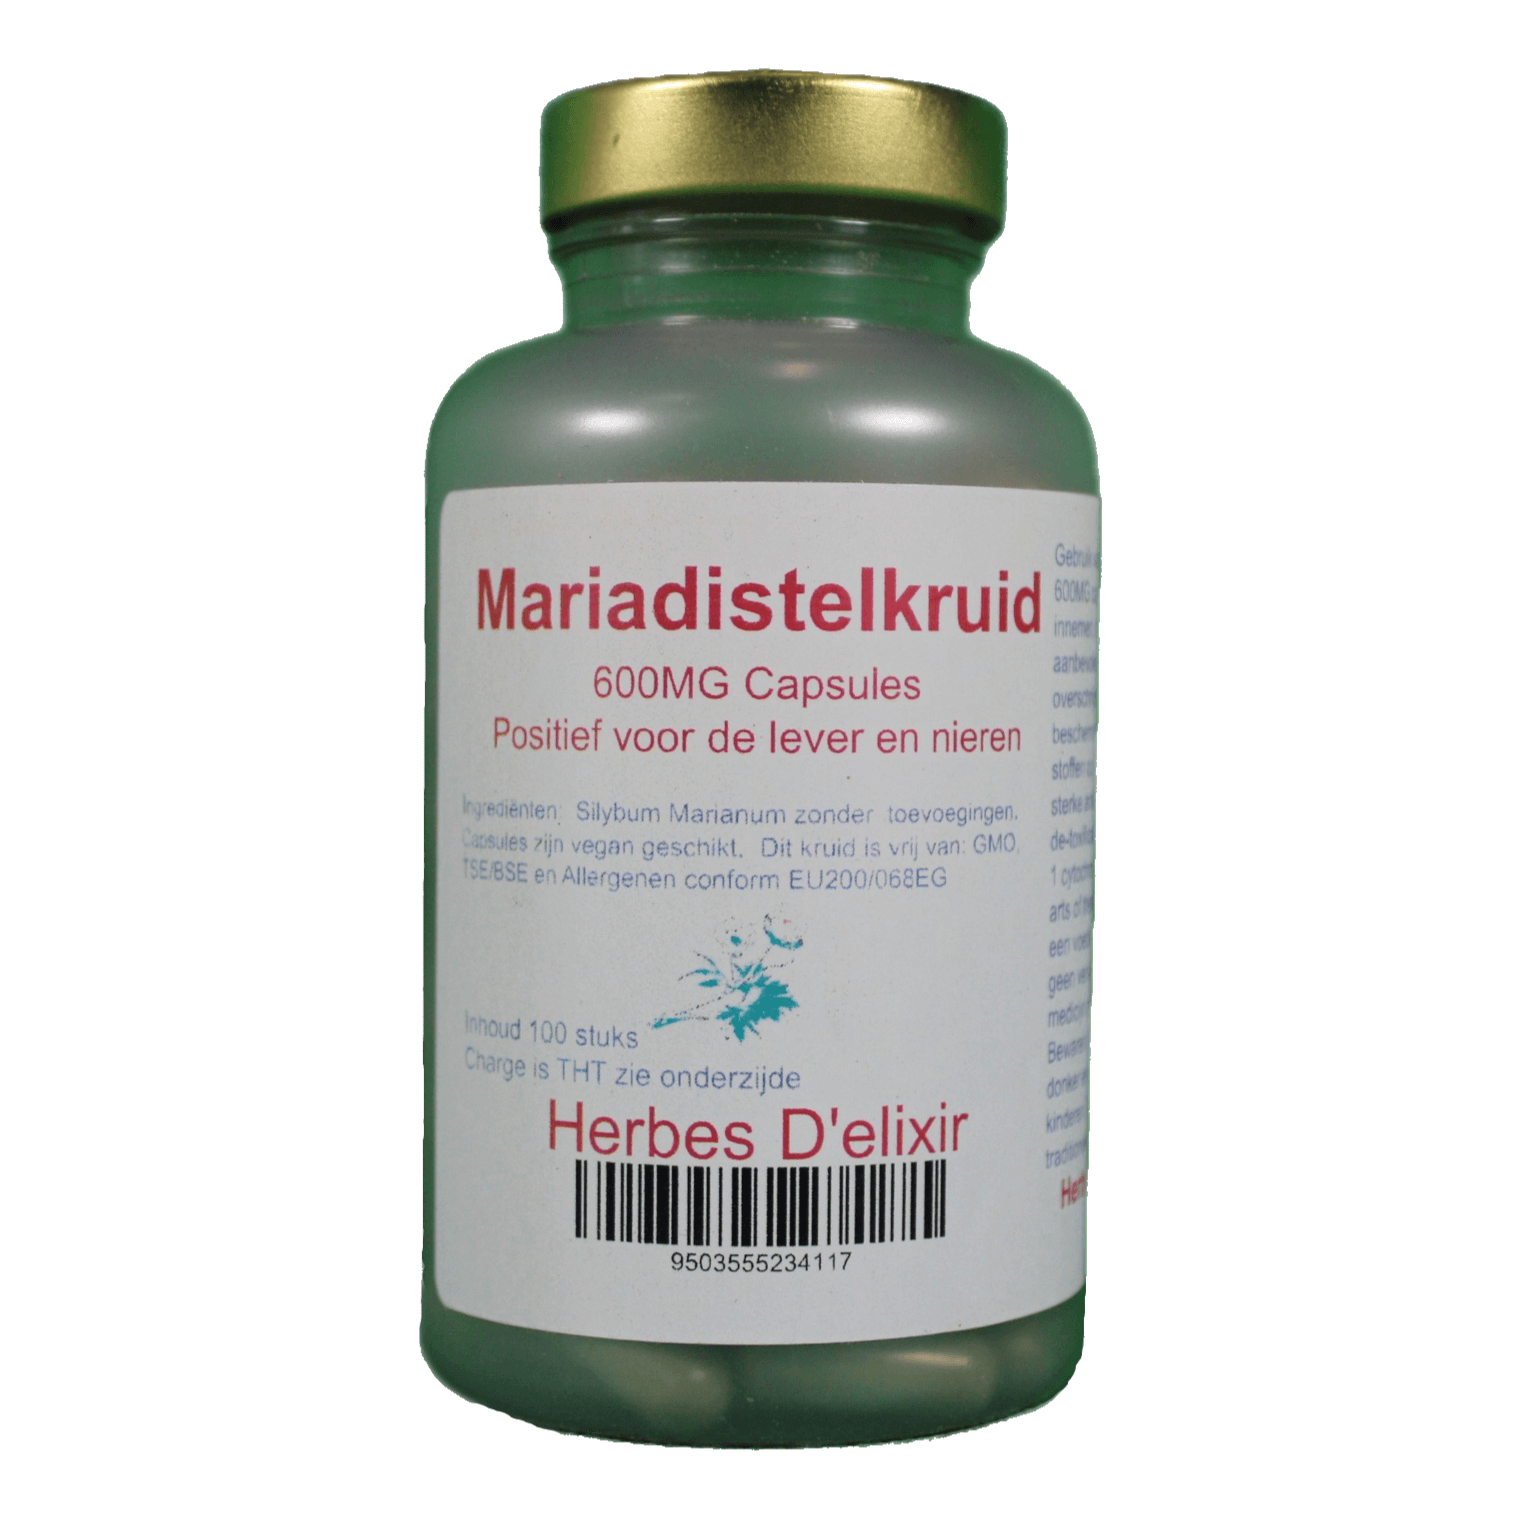 Mariadistelkruid capsules